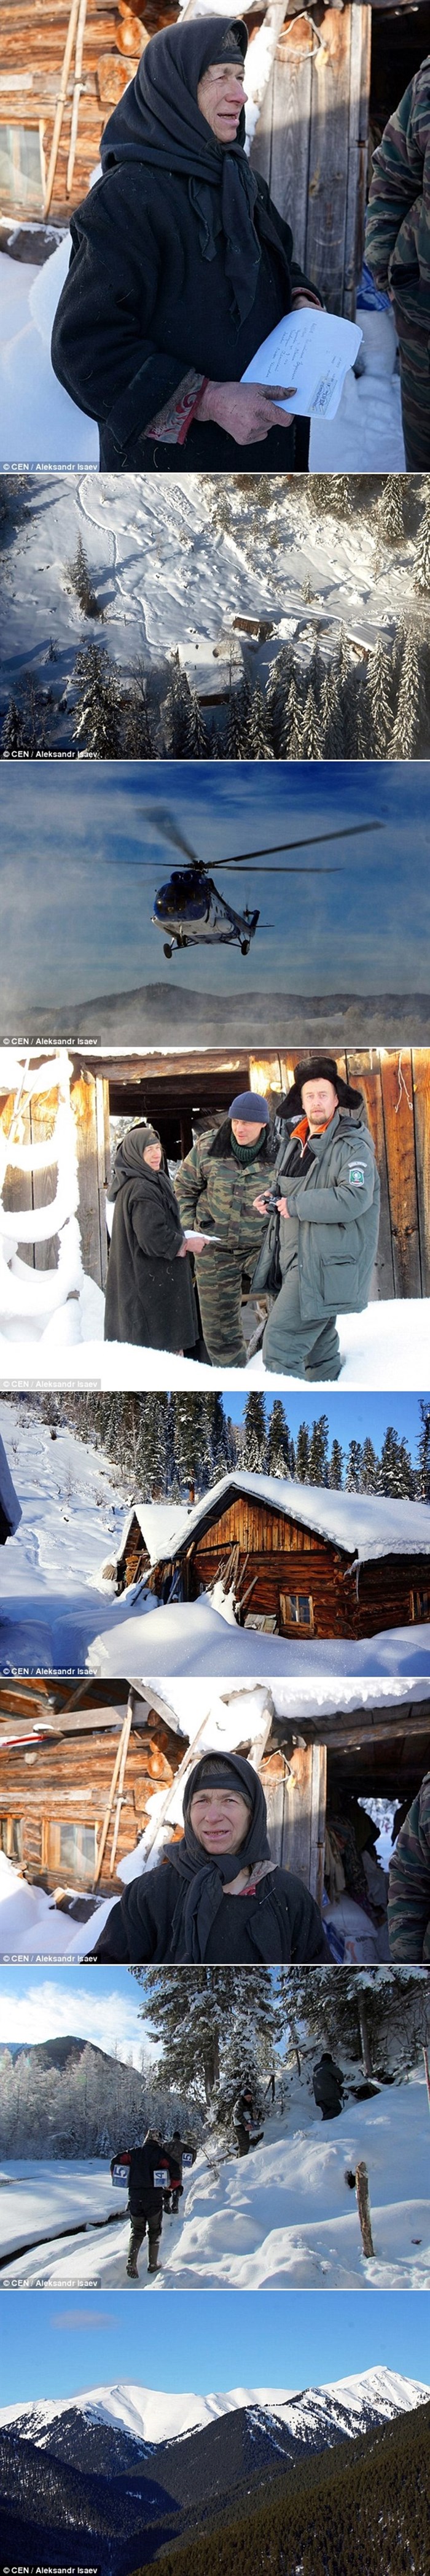 Baka iz Sibira odsječena od svijeta 80 godina, helikopterom upoznala 21. stoljeće